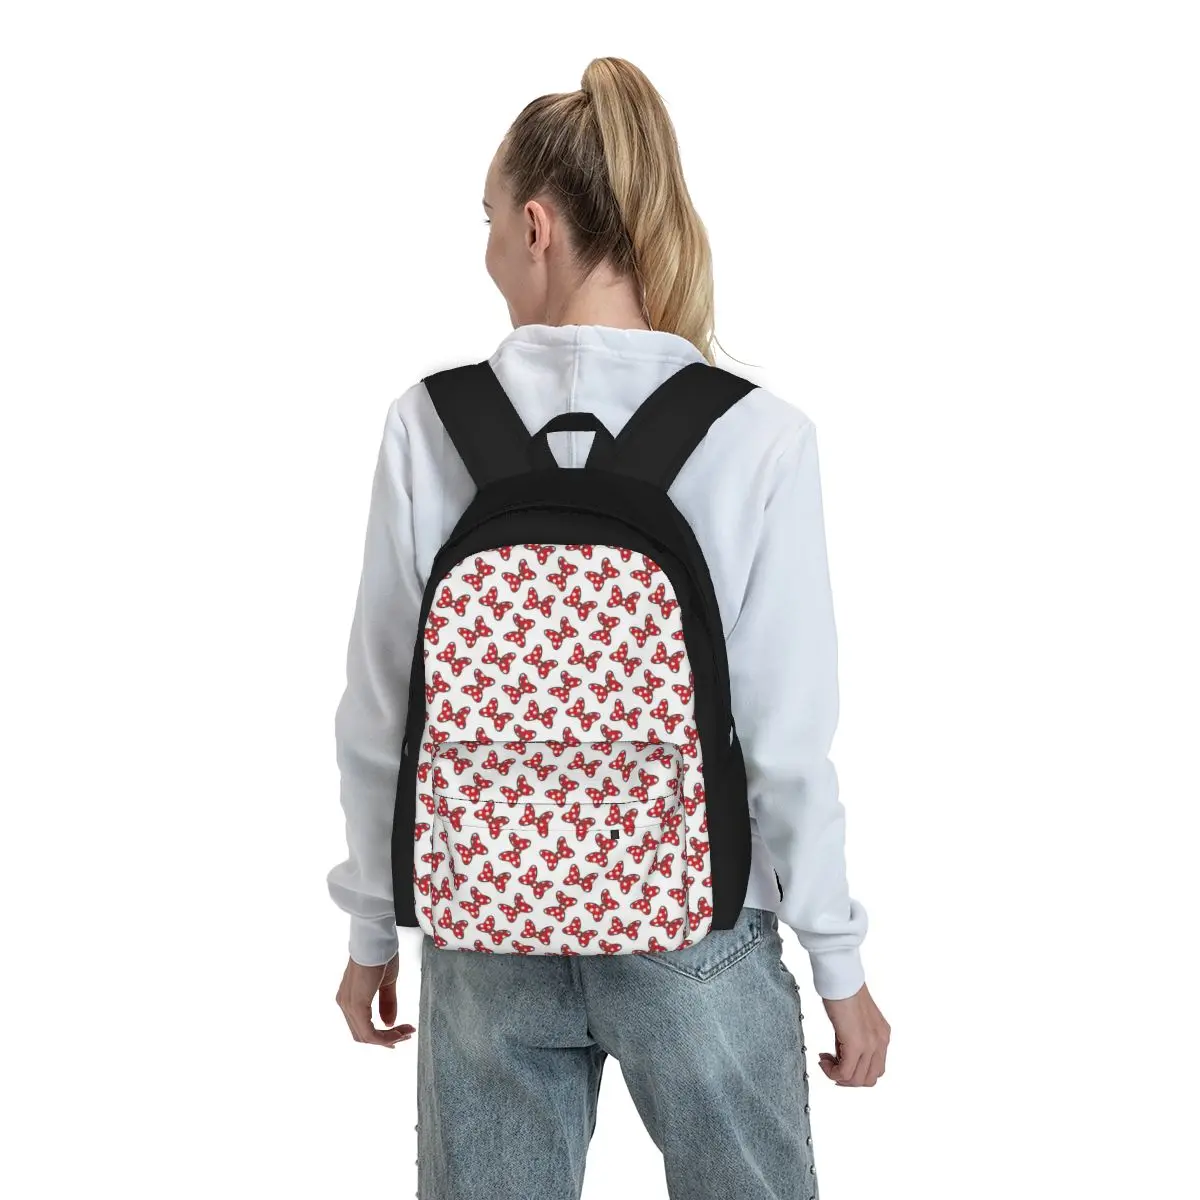 Женский рюкзак Disney с Минни Маус и Микки, школьная сумка Mochila, мультяшный компьютерный рюкзак для мальчиков и девочек, сумка через плечо - 3